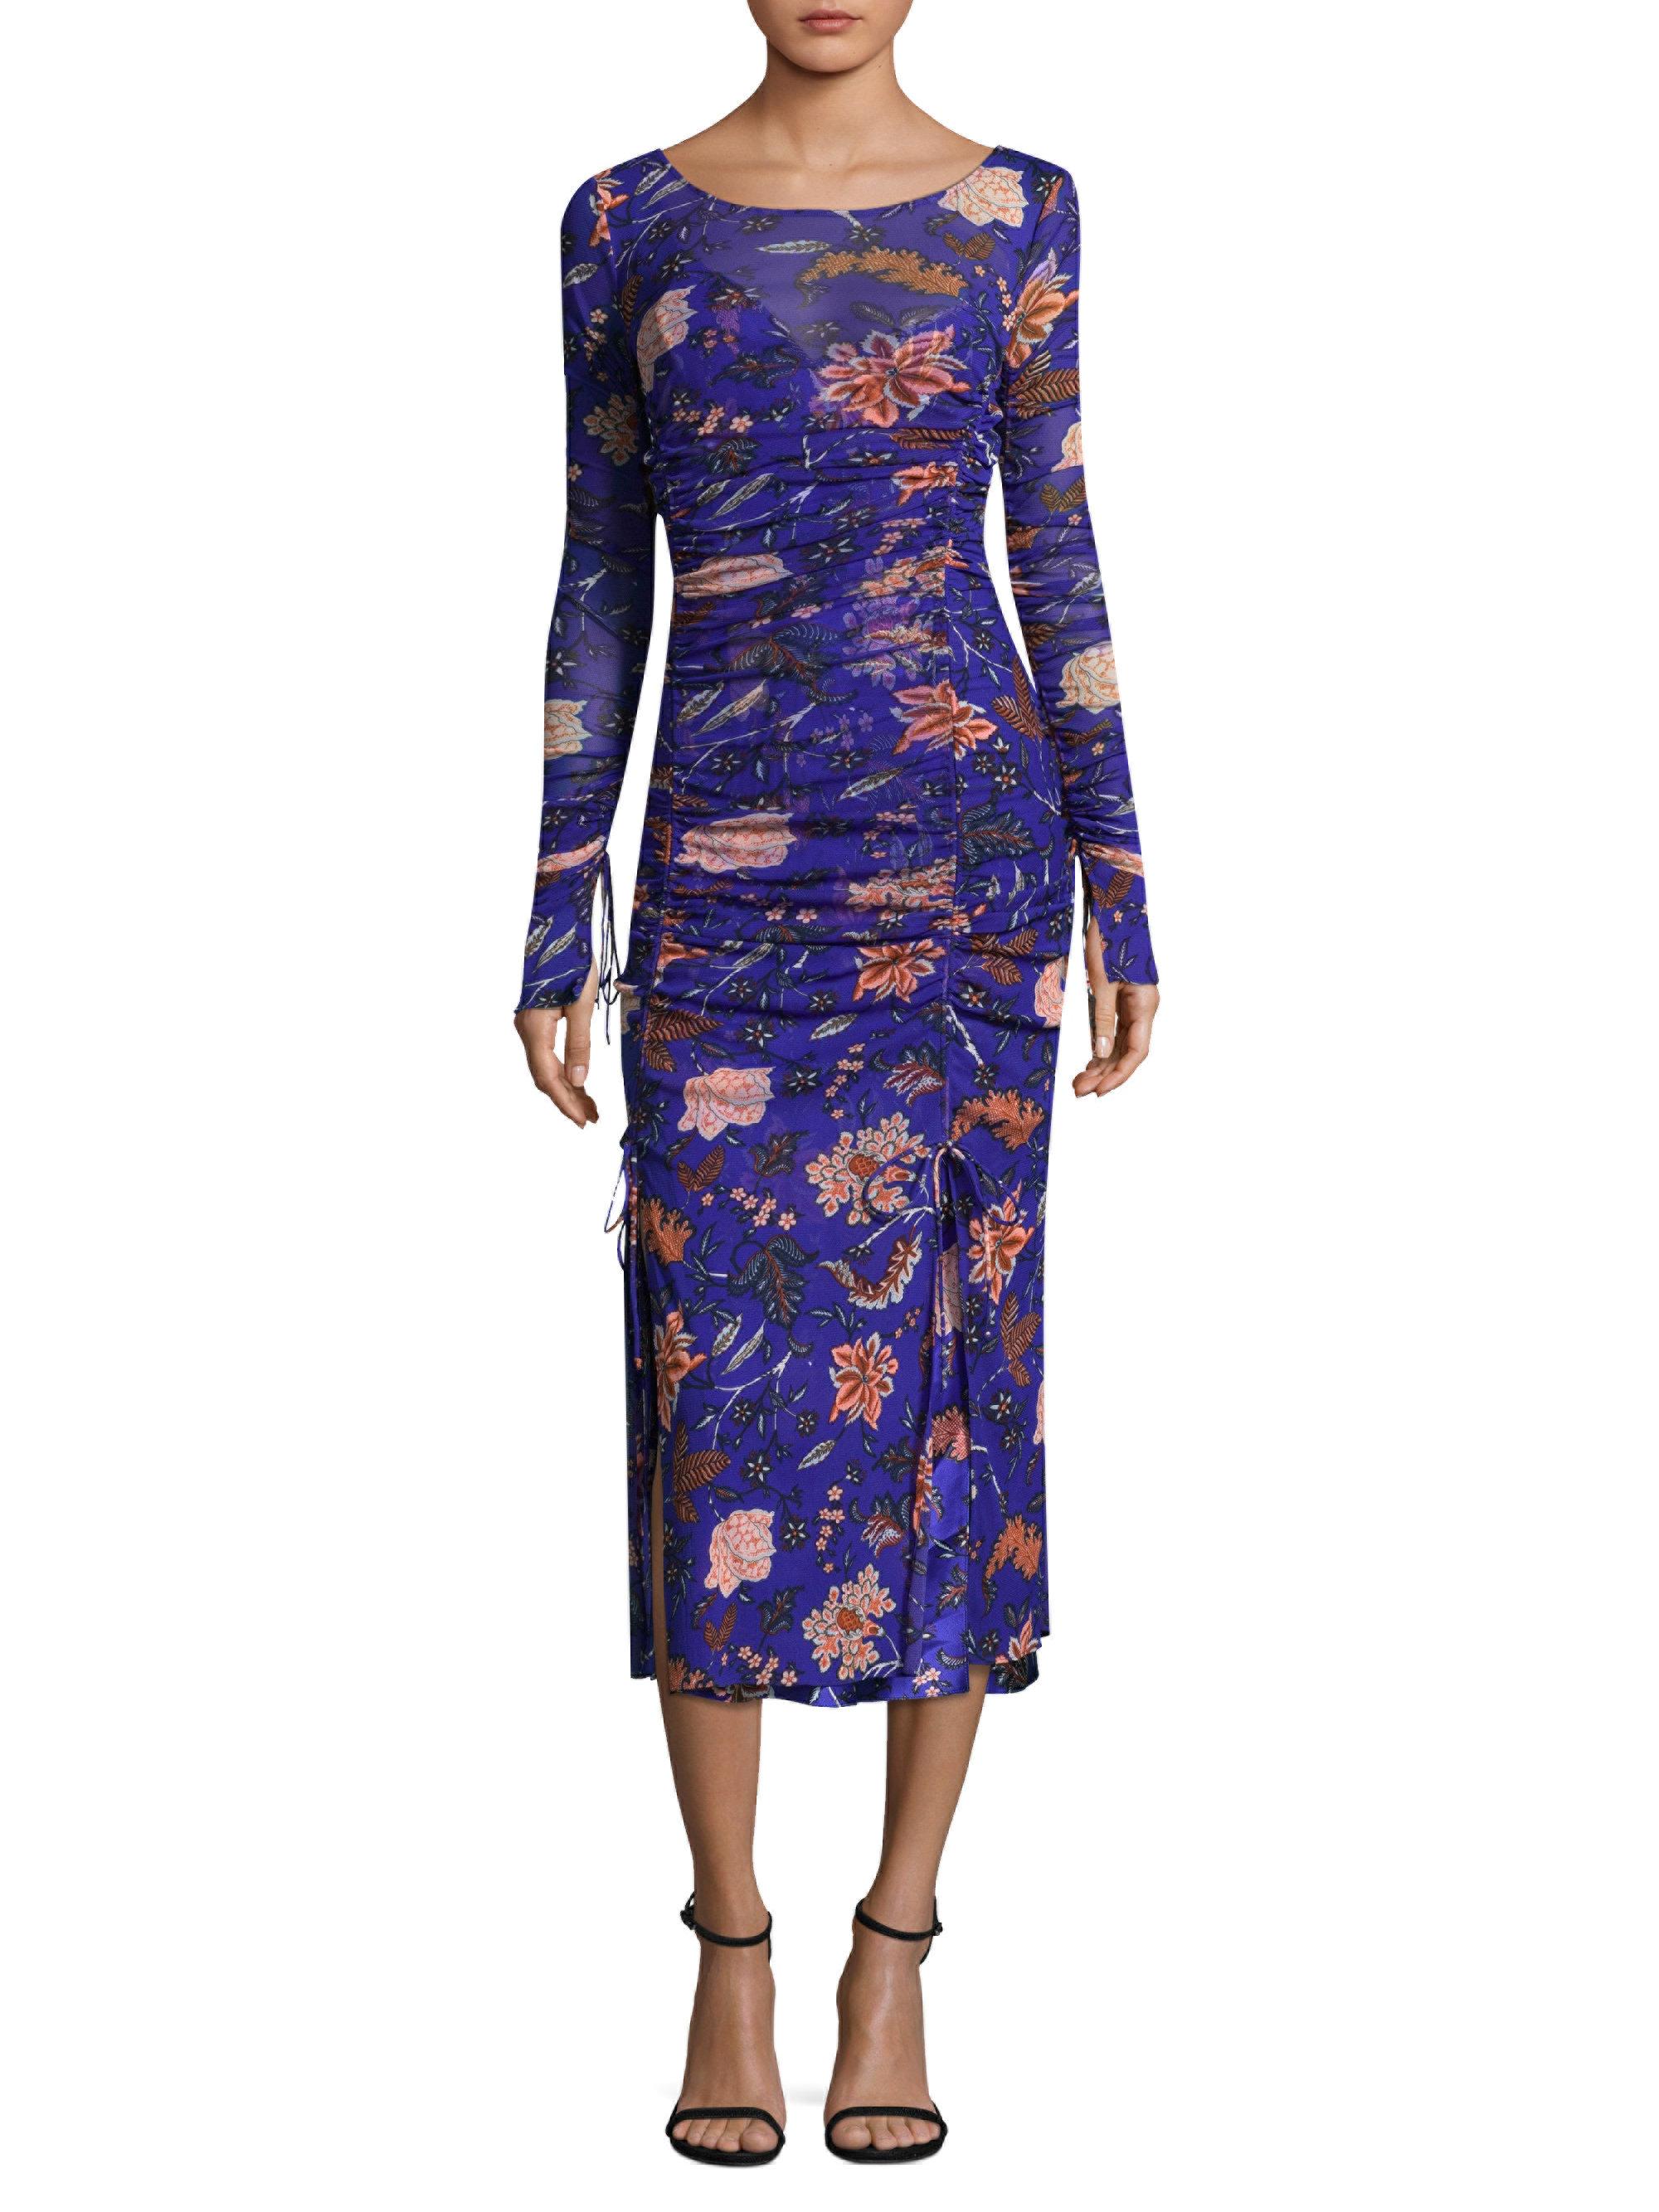 Diane von Furstenberg Long Sleeve Floral Mesh Overlay Dress in Blue - Lyst